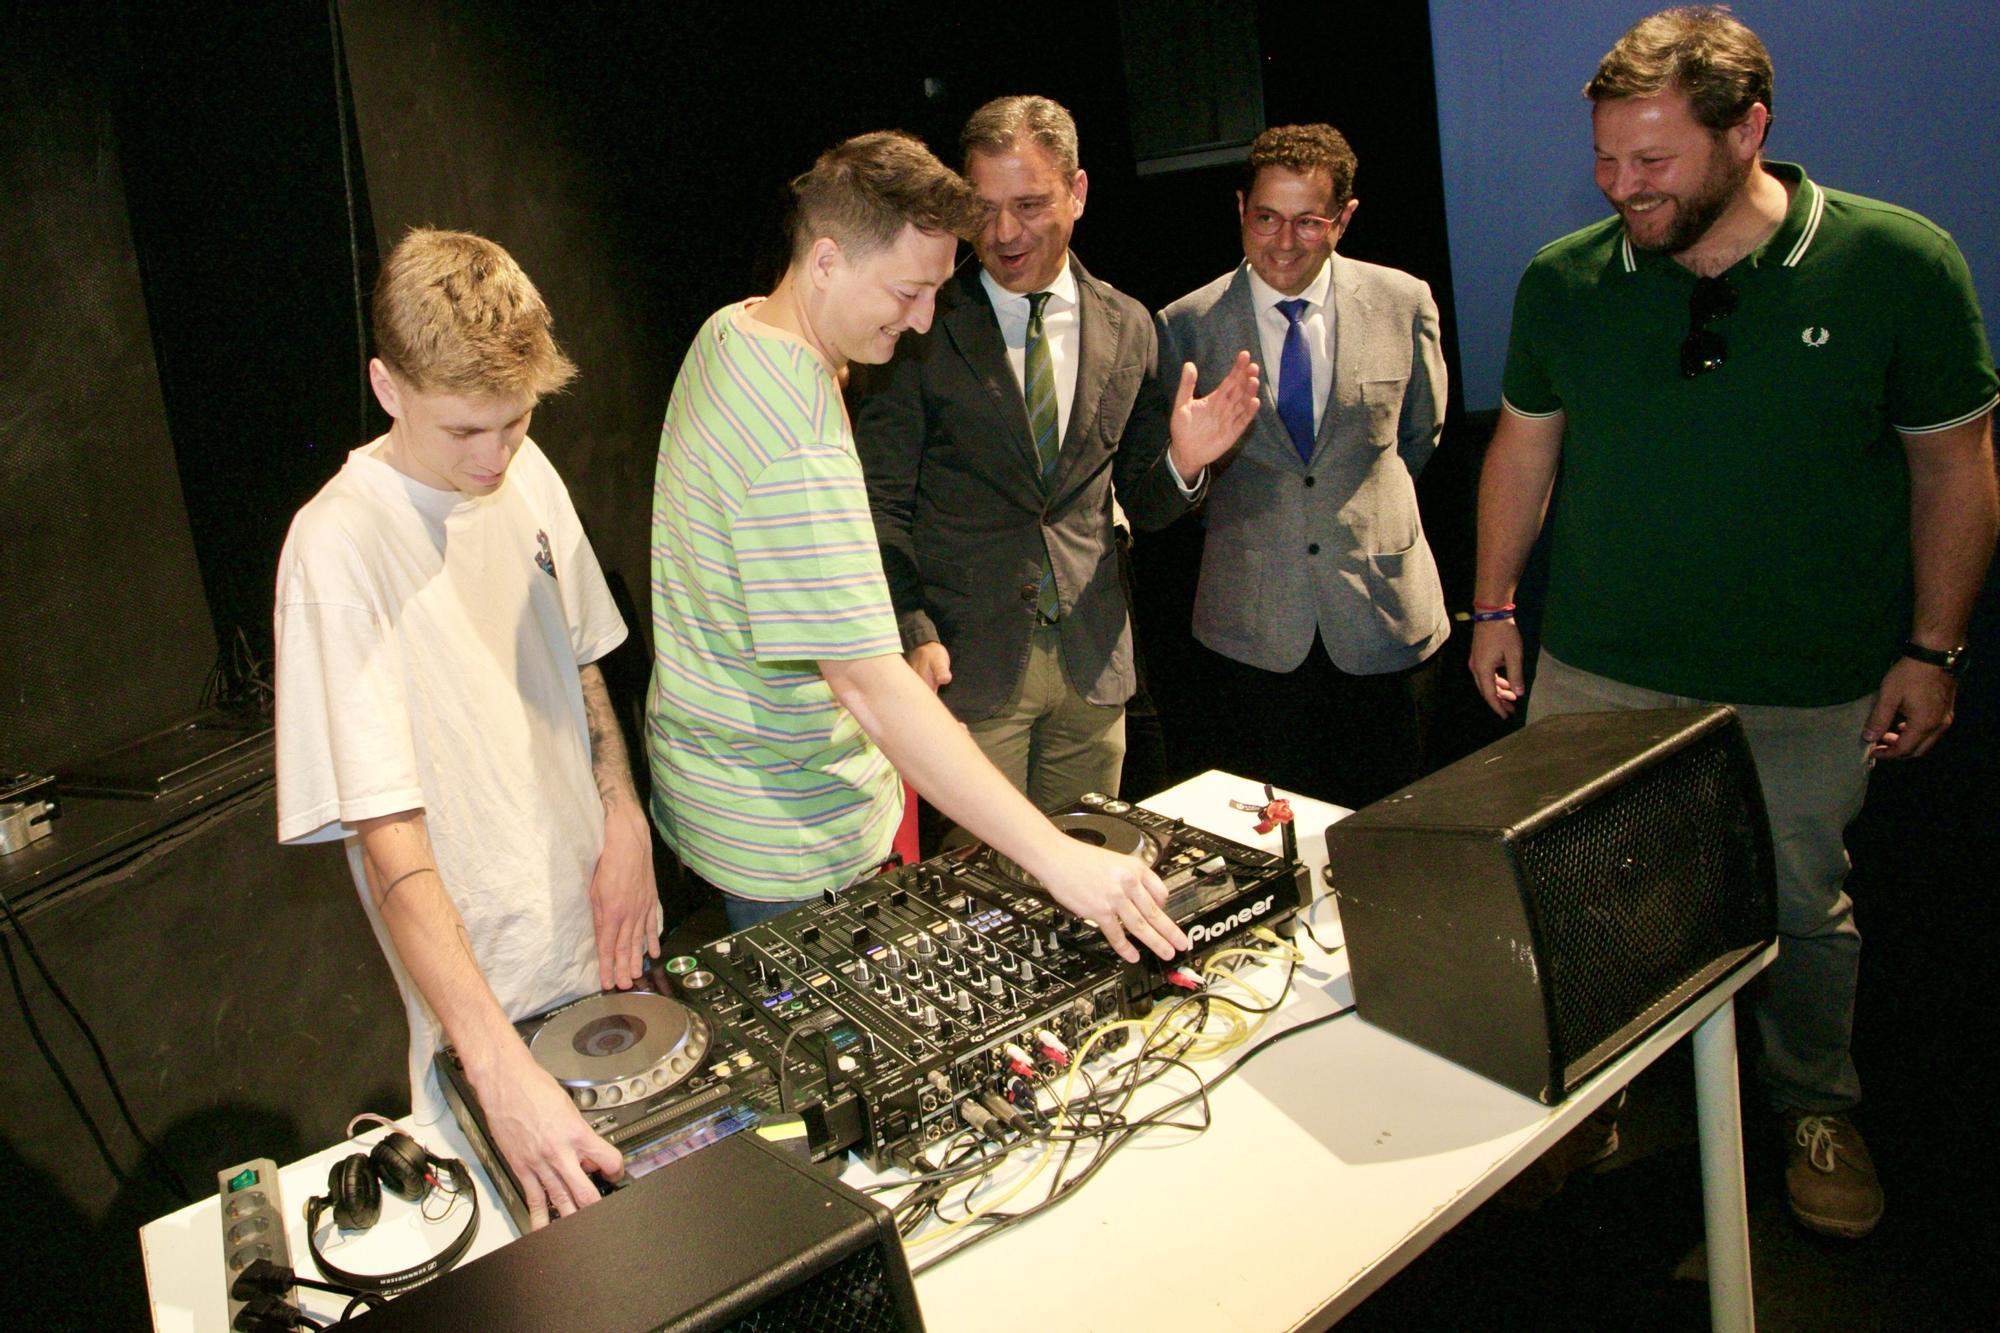 El consejero Ortuño se interesa por el trabajo de los DJ’s que amenizaron la presentación.